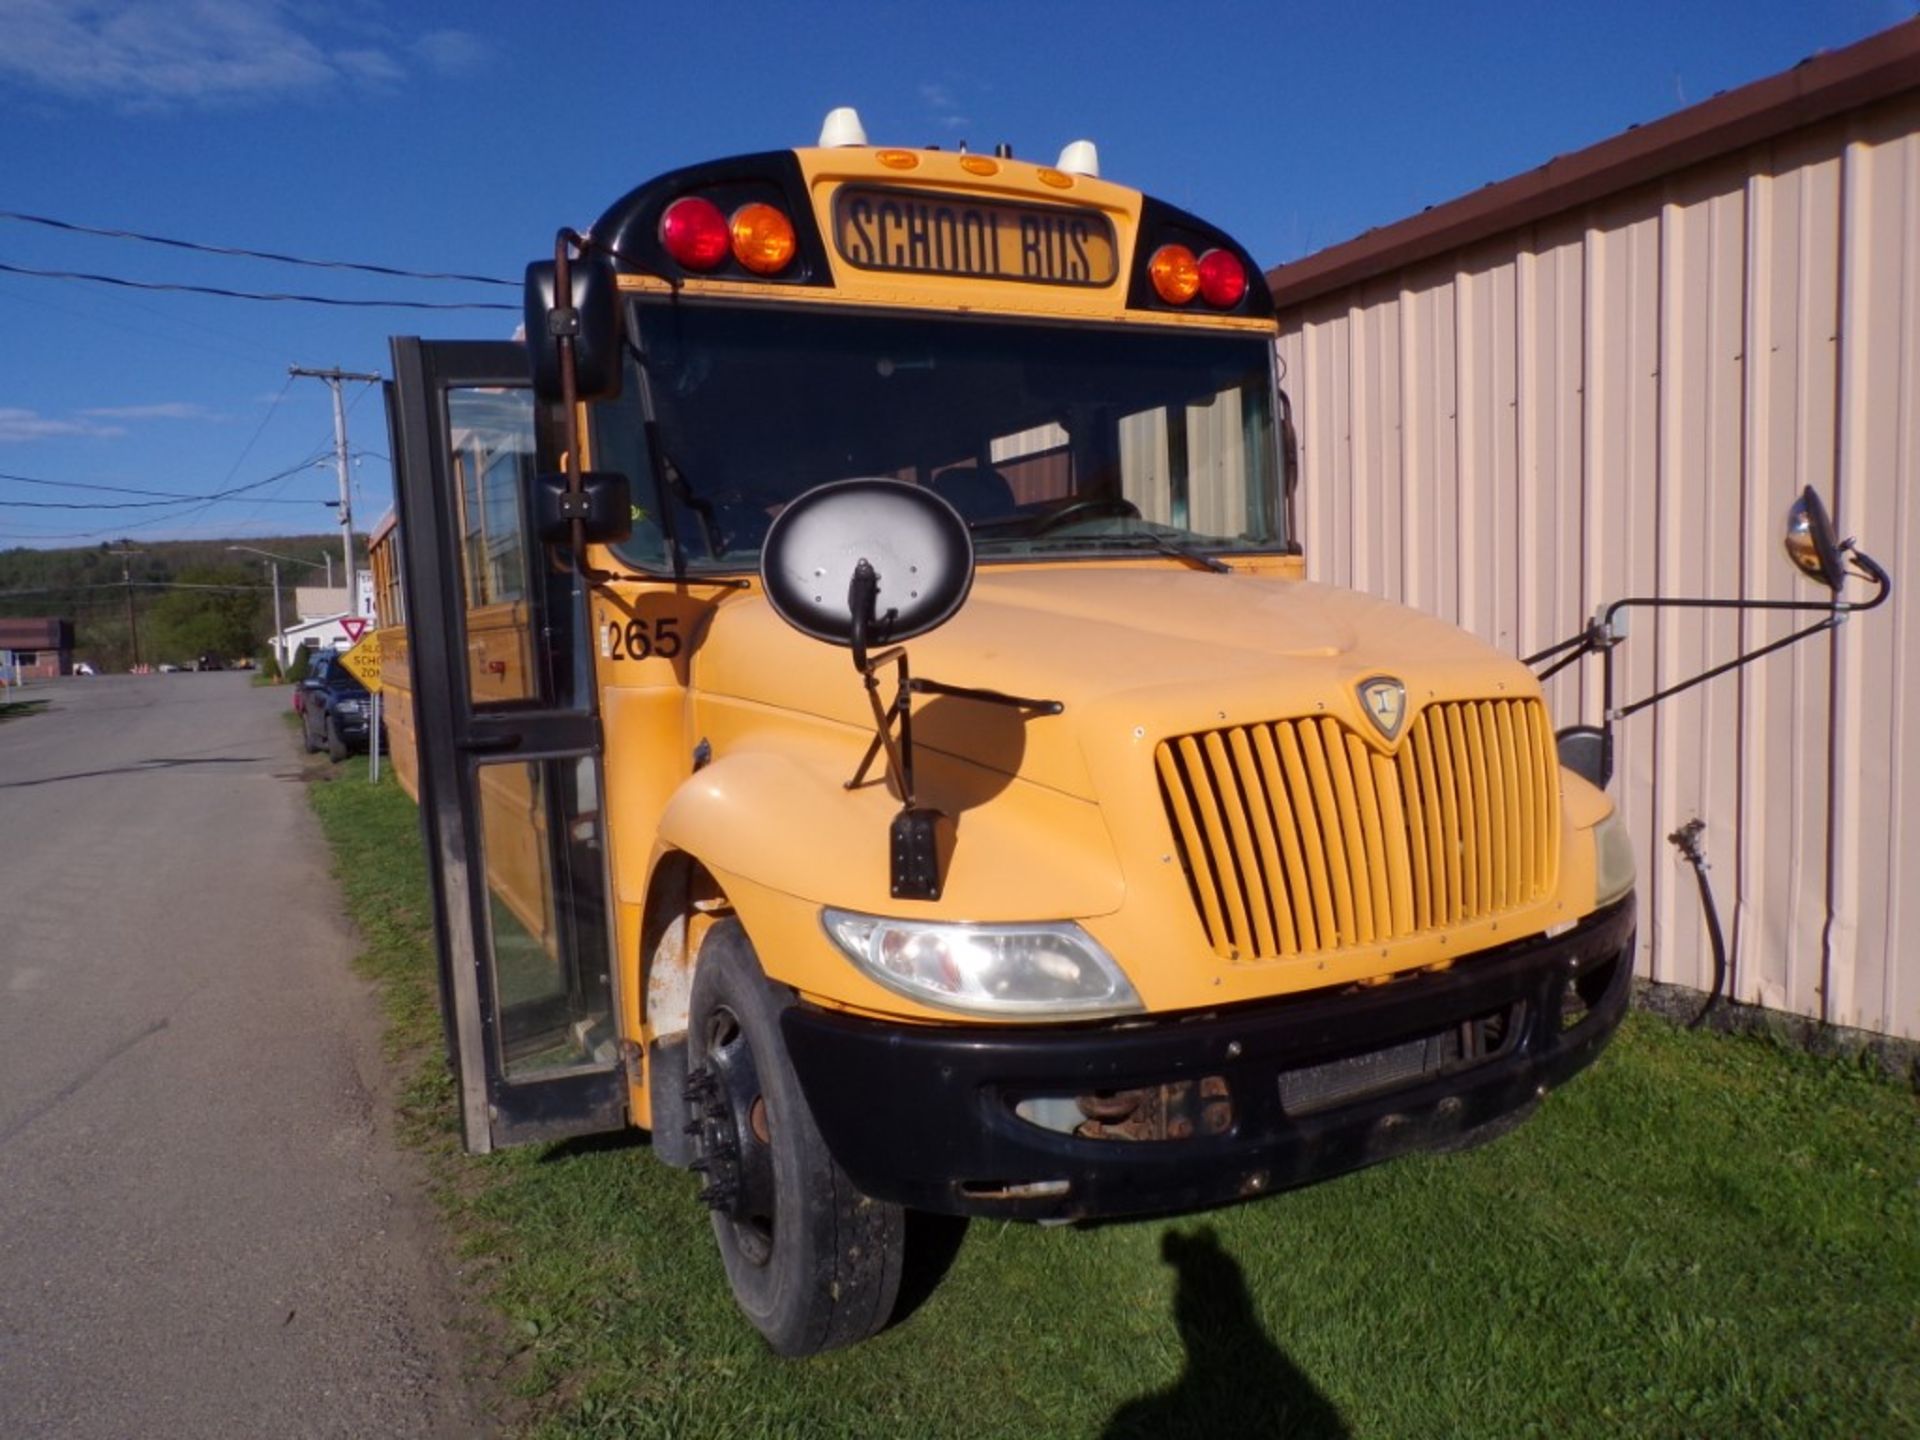 2014 International 66 Seat School Bus, Maxx Force Diesel, 165,315 Miles, # 265, Vin # - Image 2 of 7